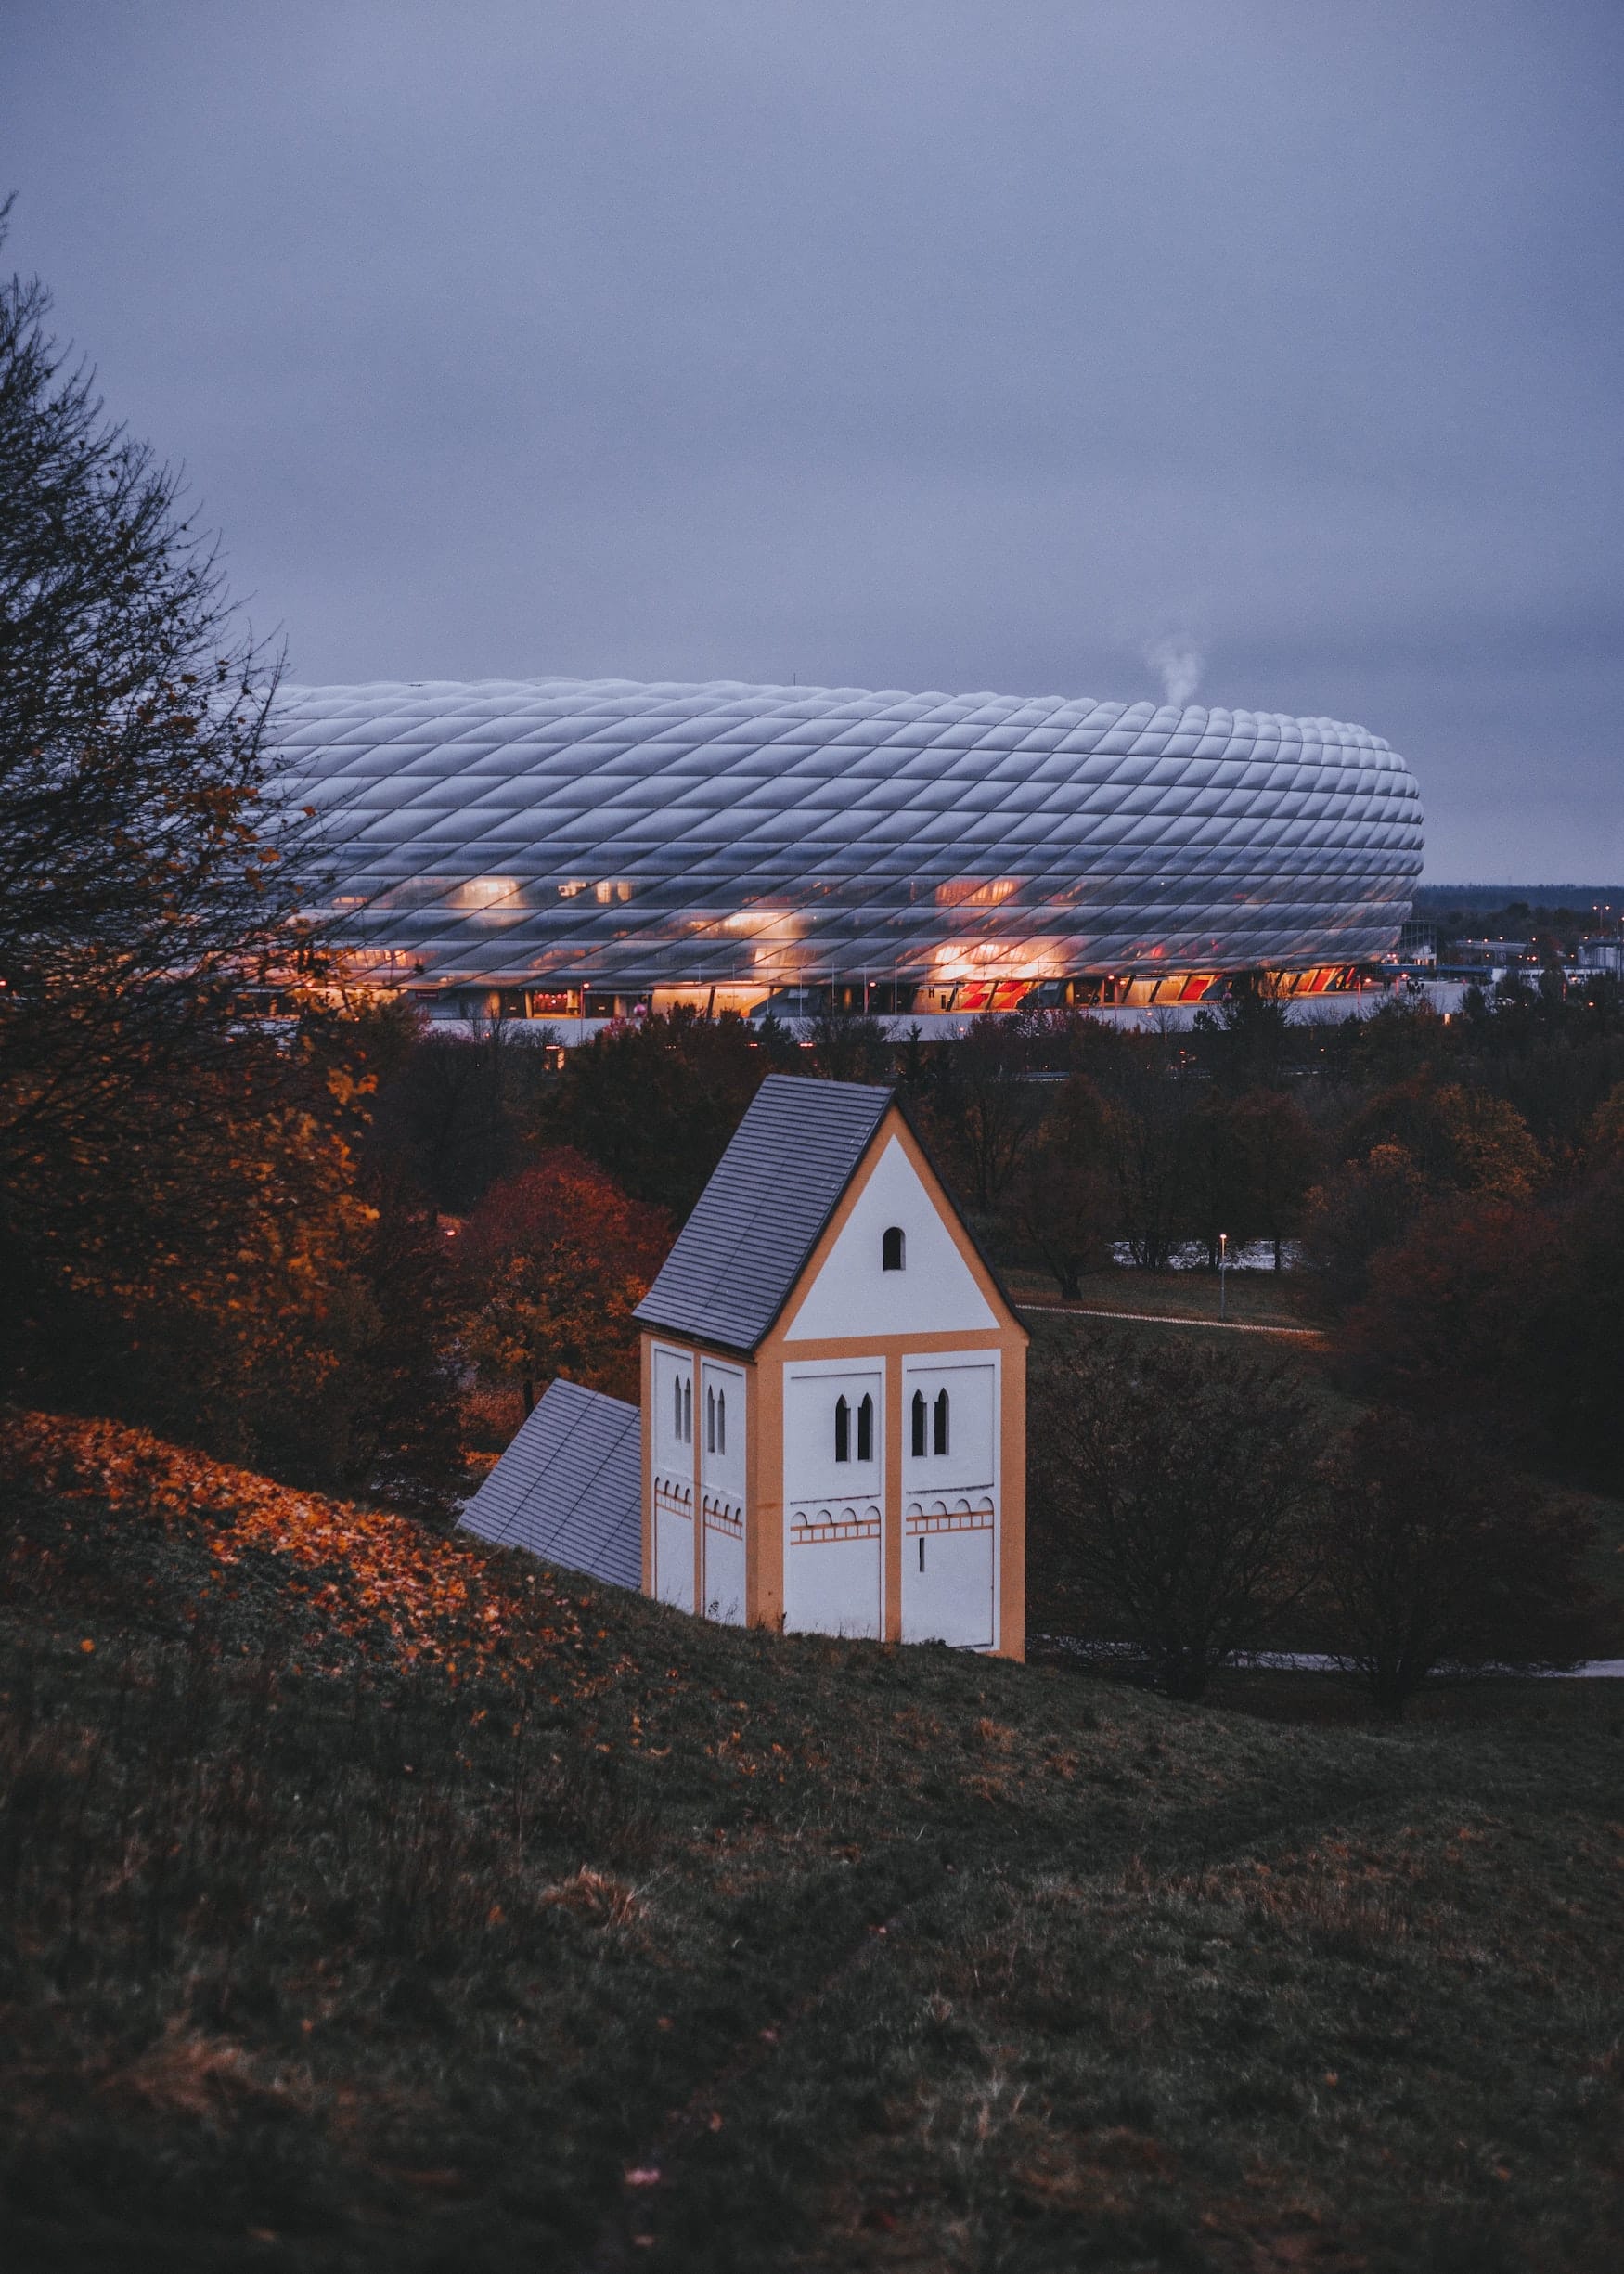 Allianz Arena hinter weiß-gelben Turm in bayerischer Landschaft am Abend